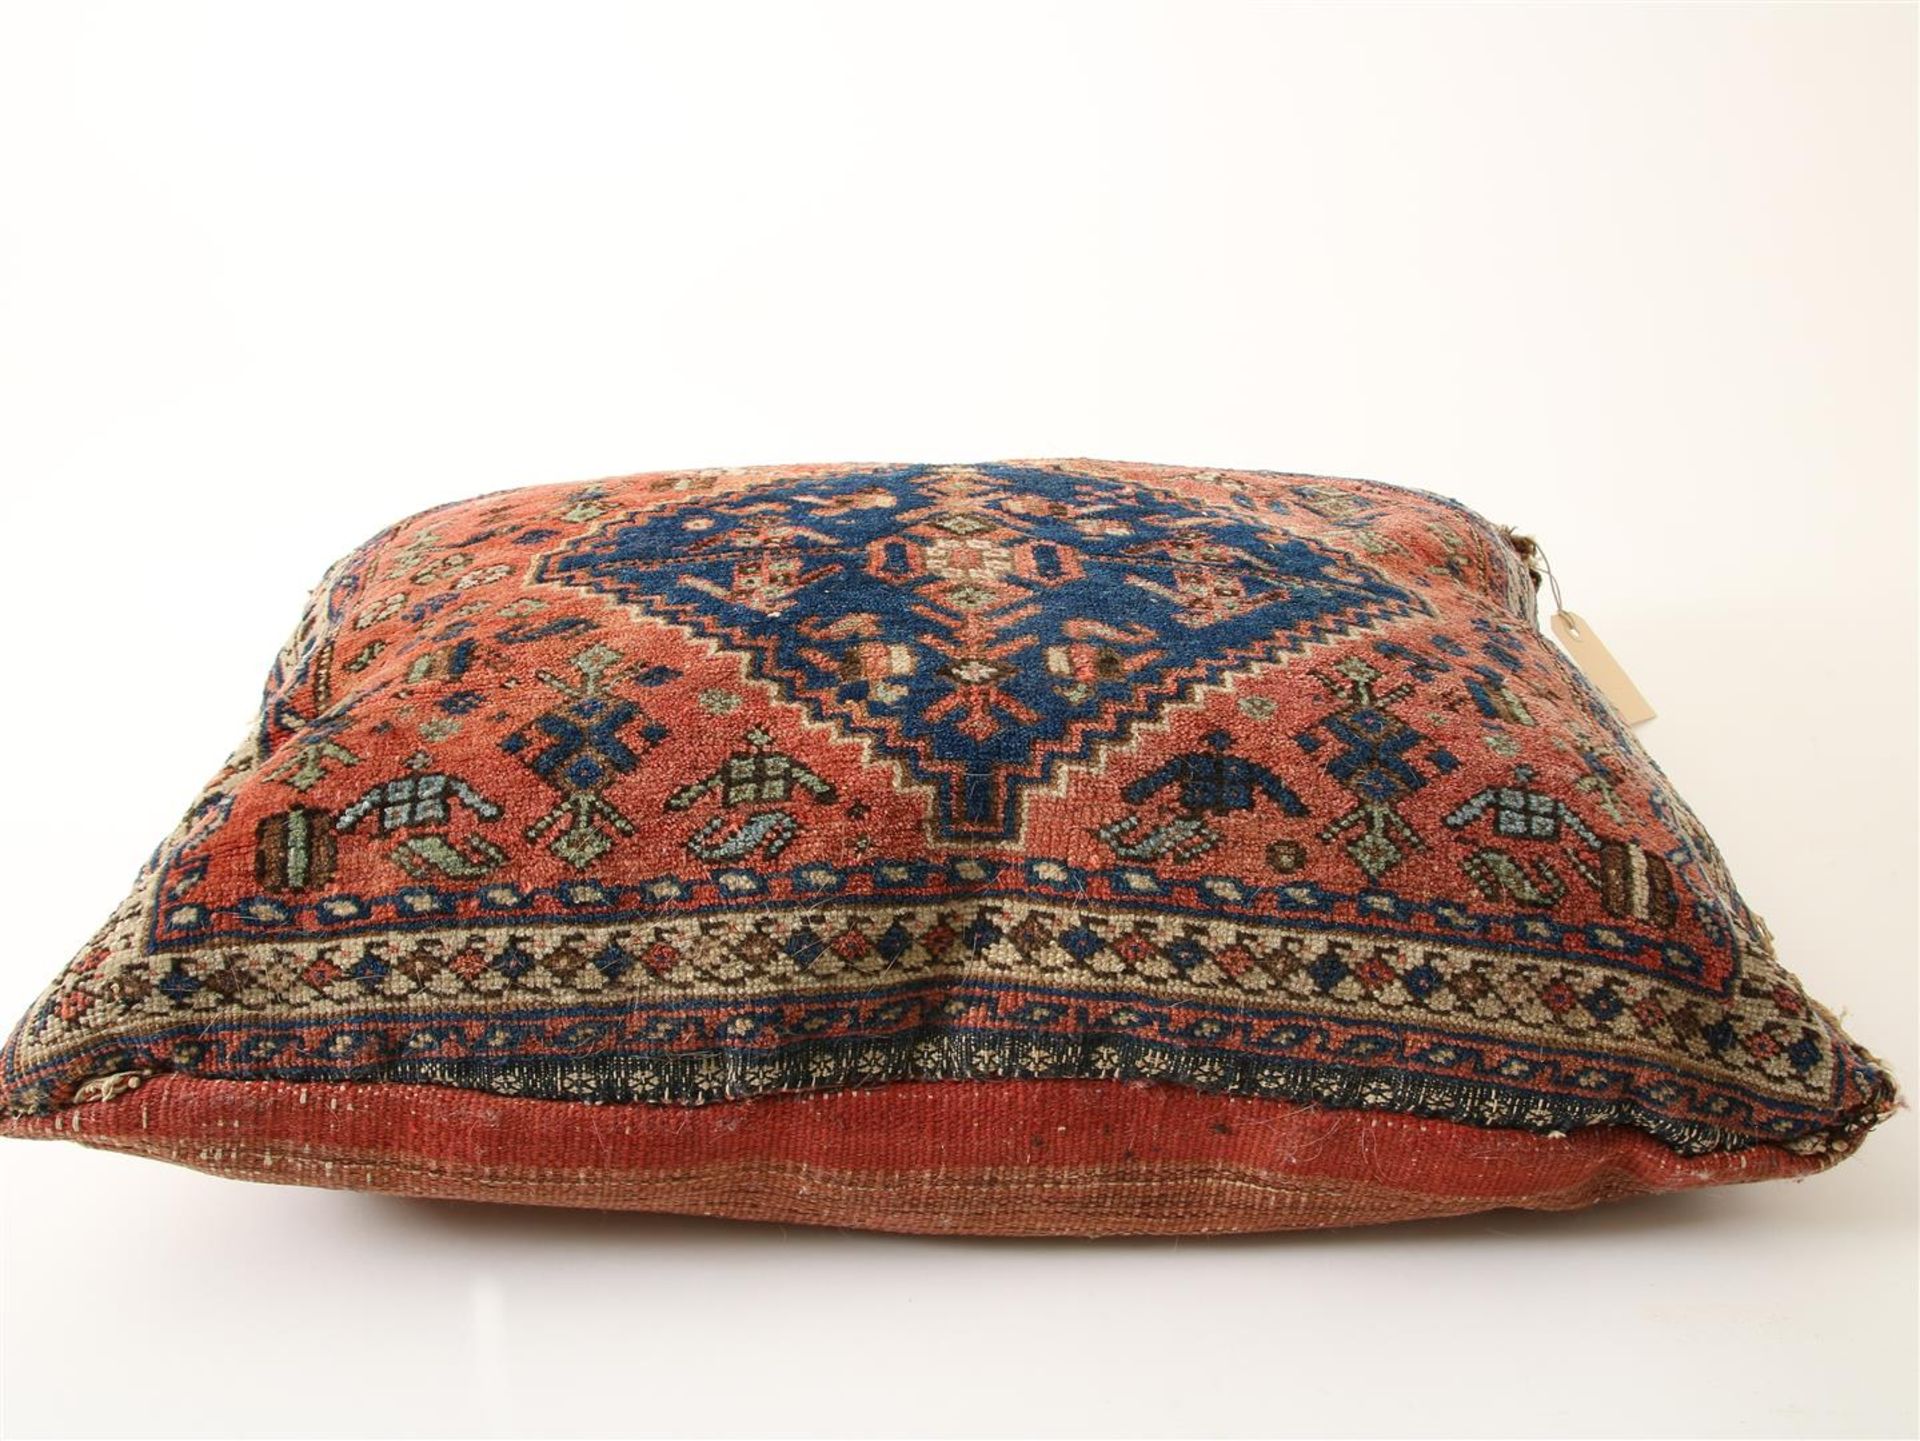 Persian pillow